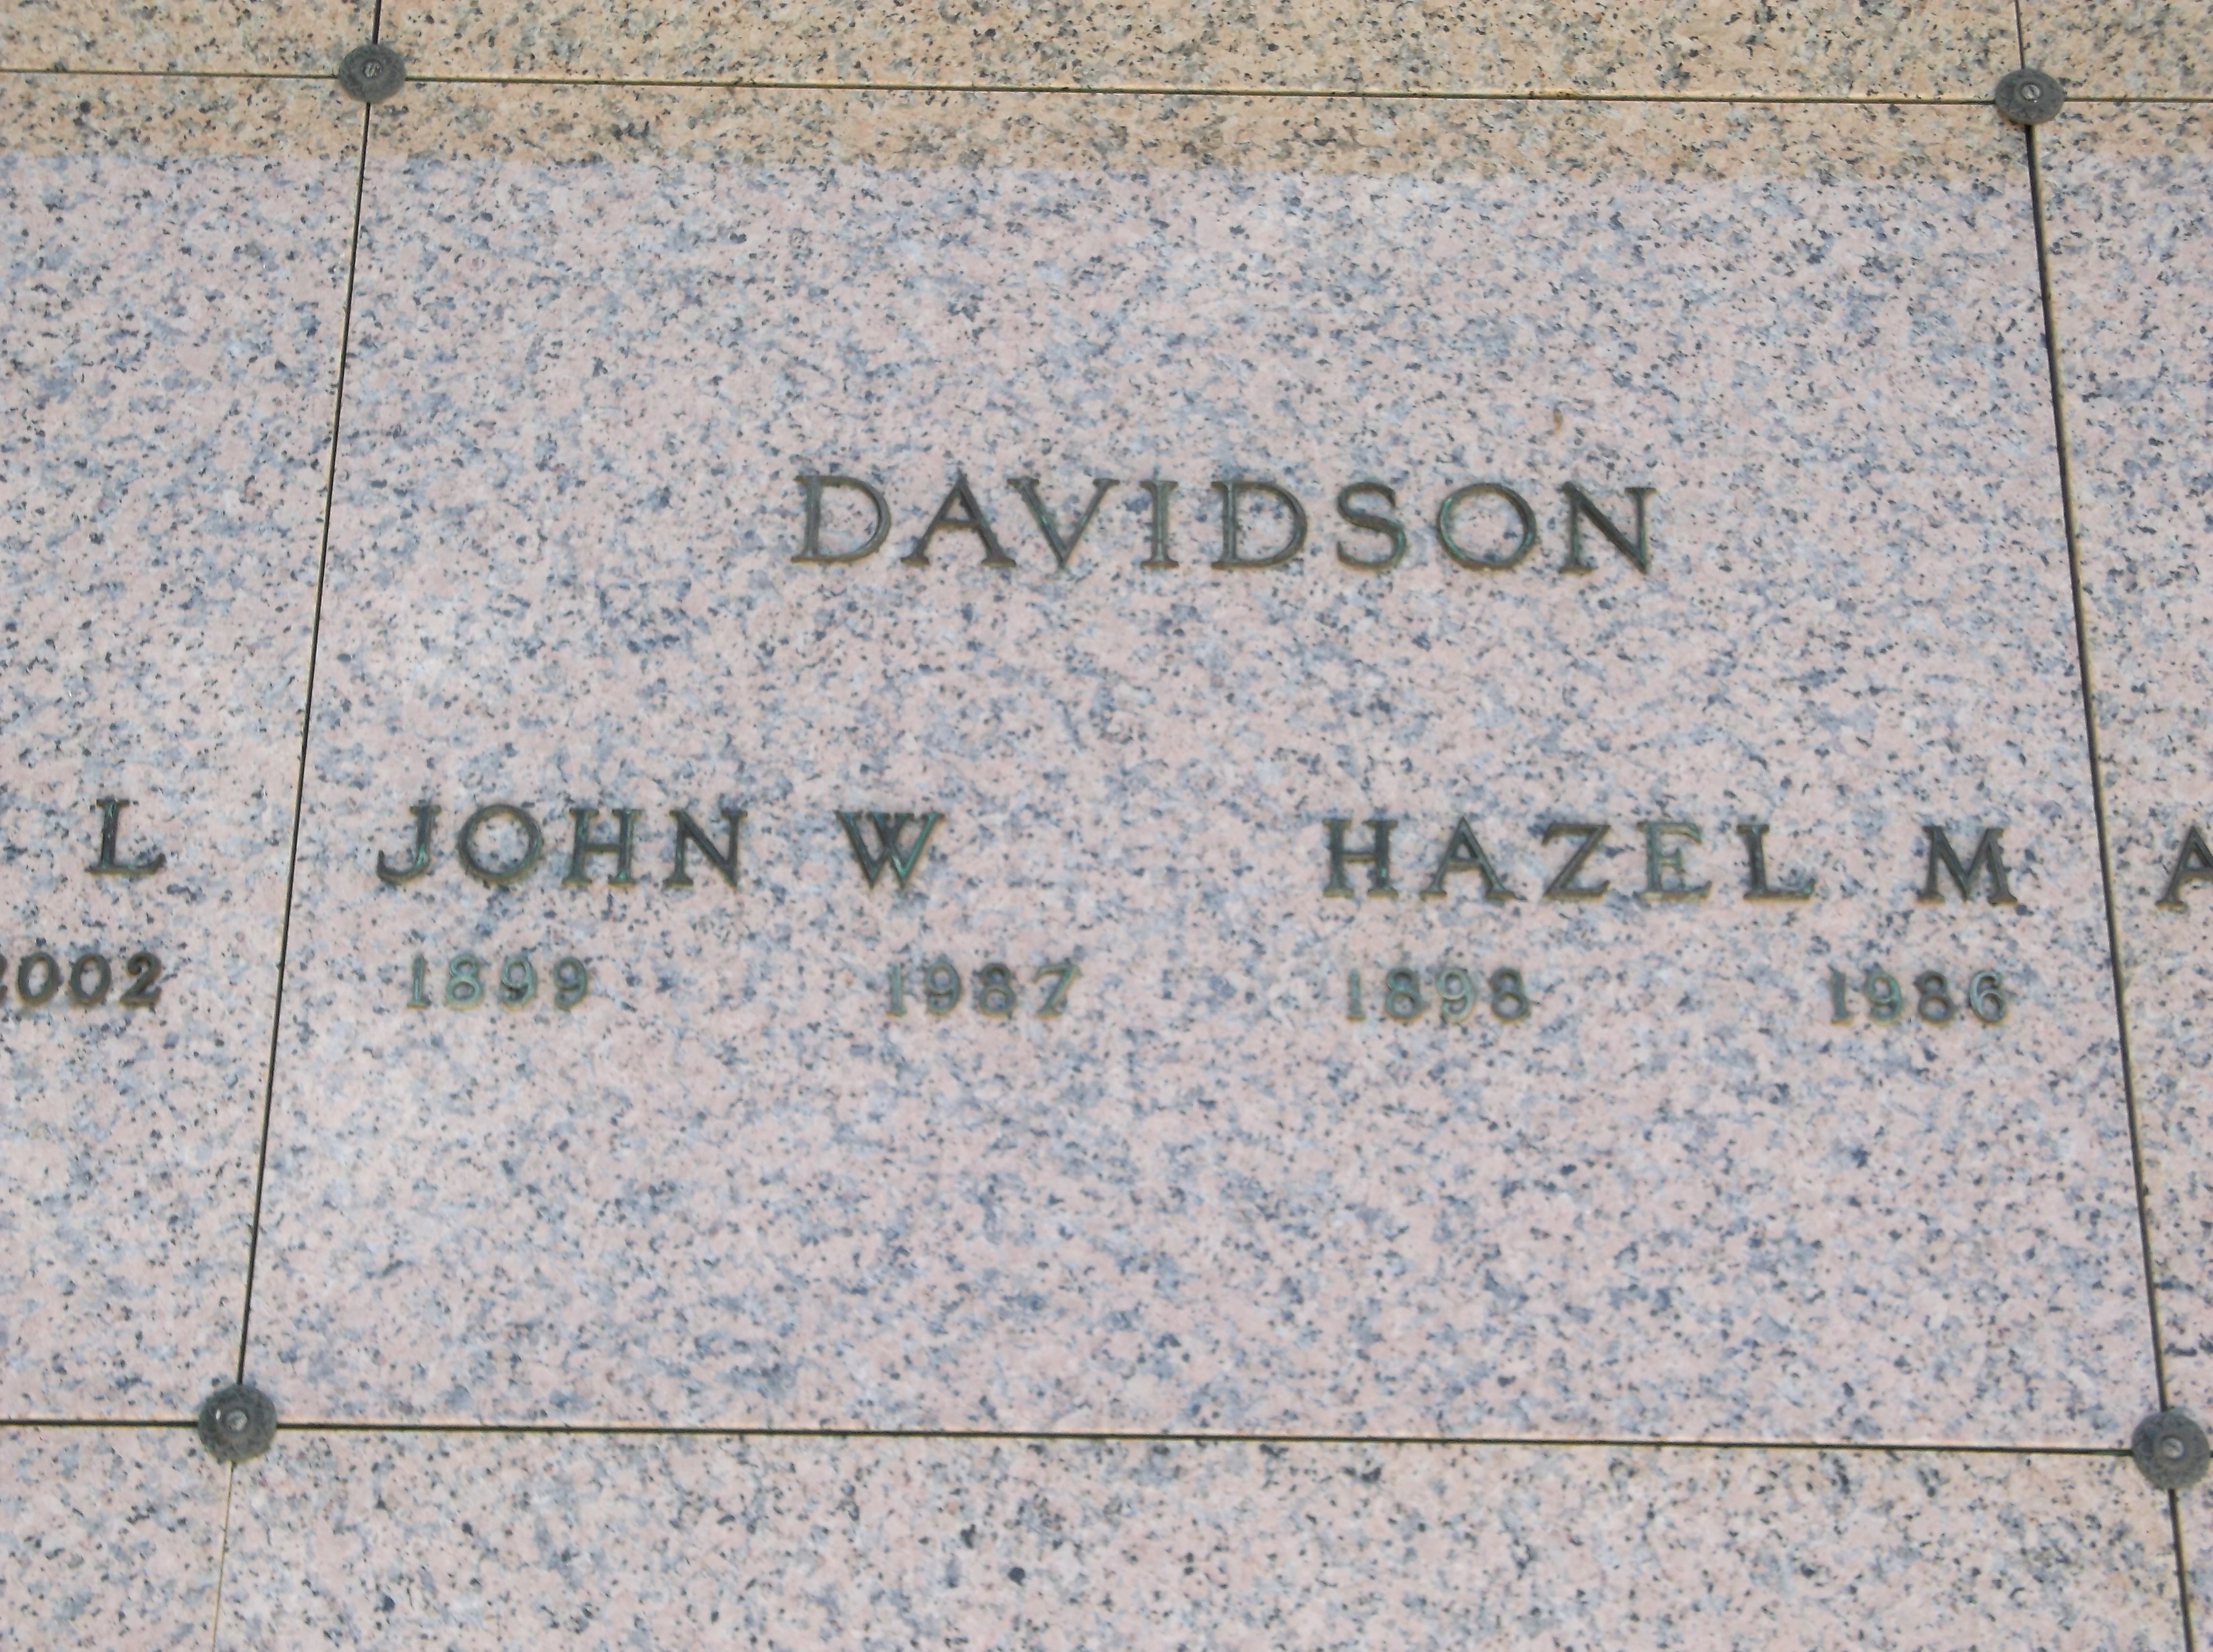 Hazel M Davidson